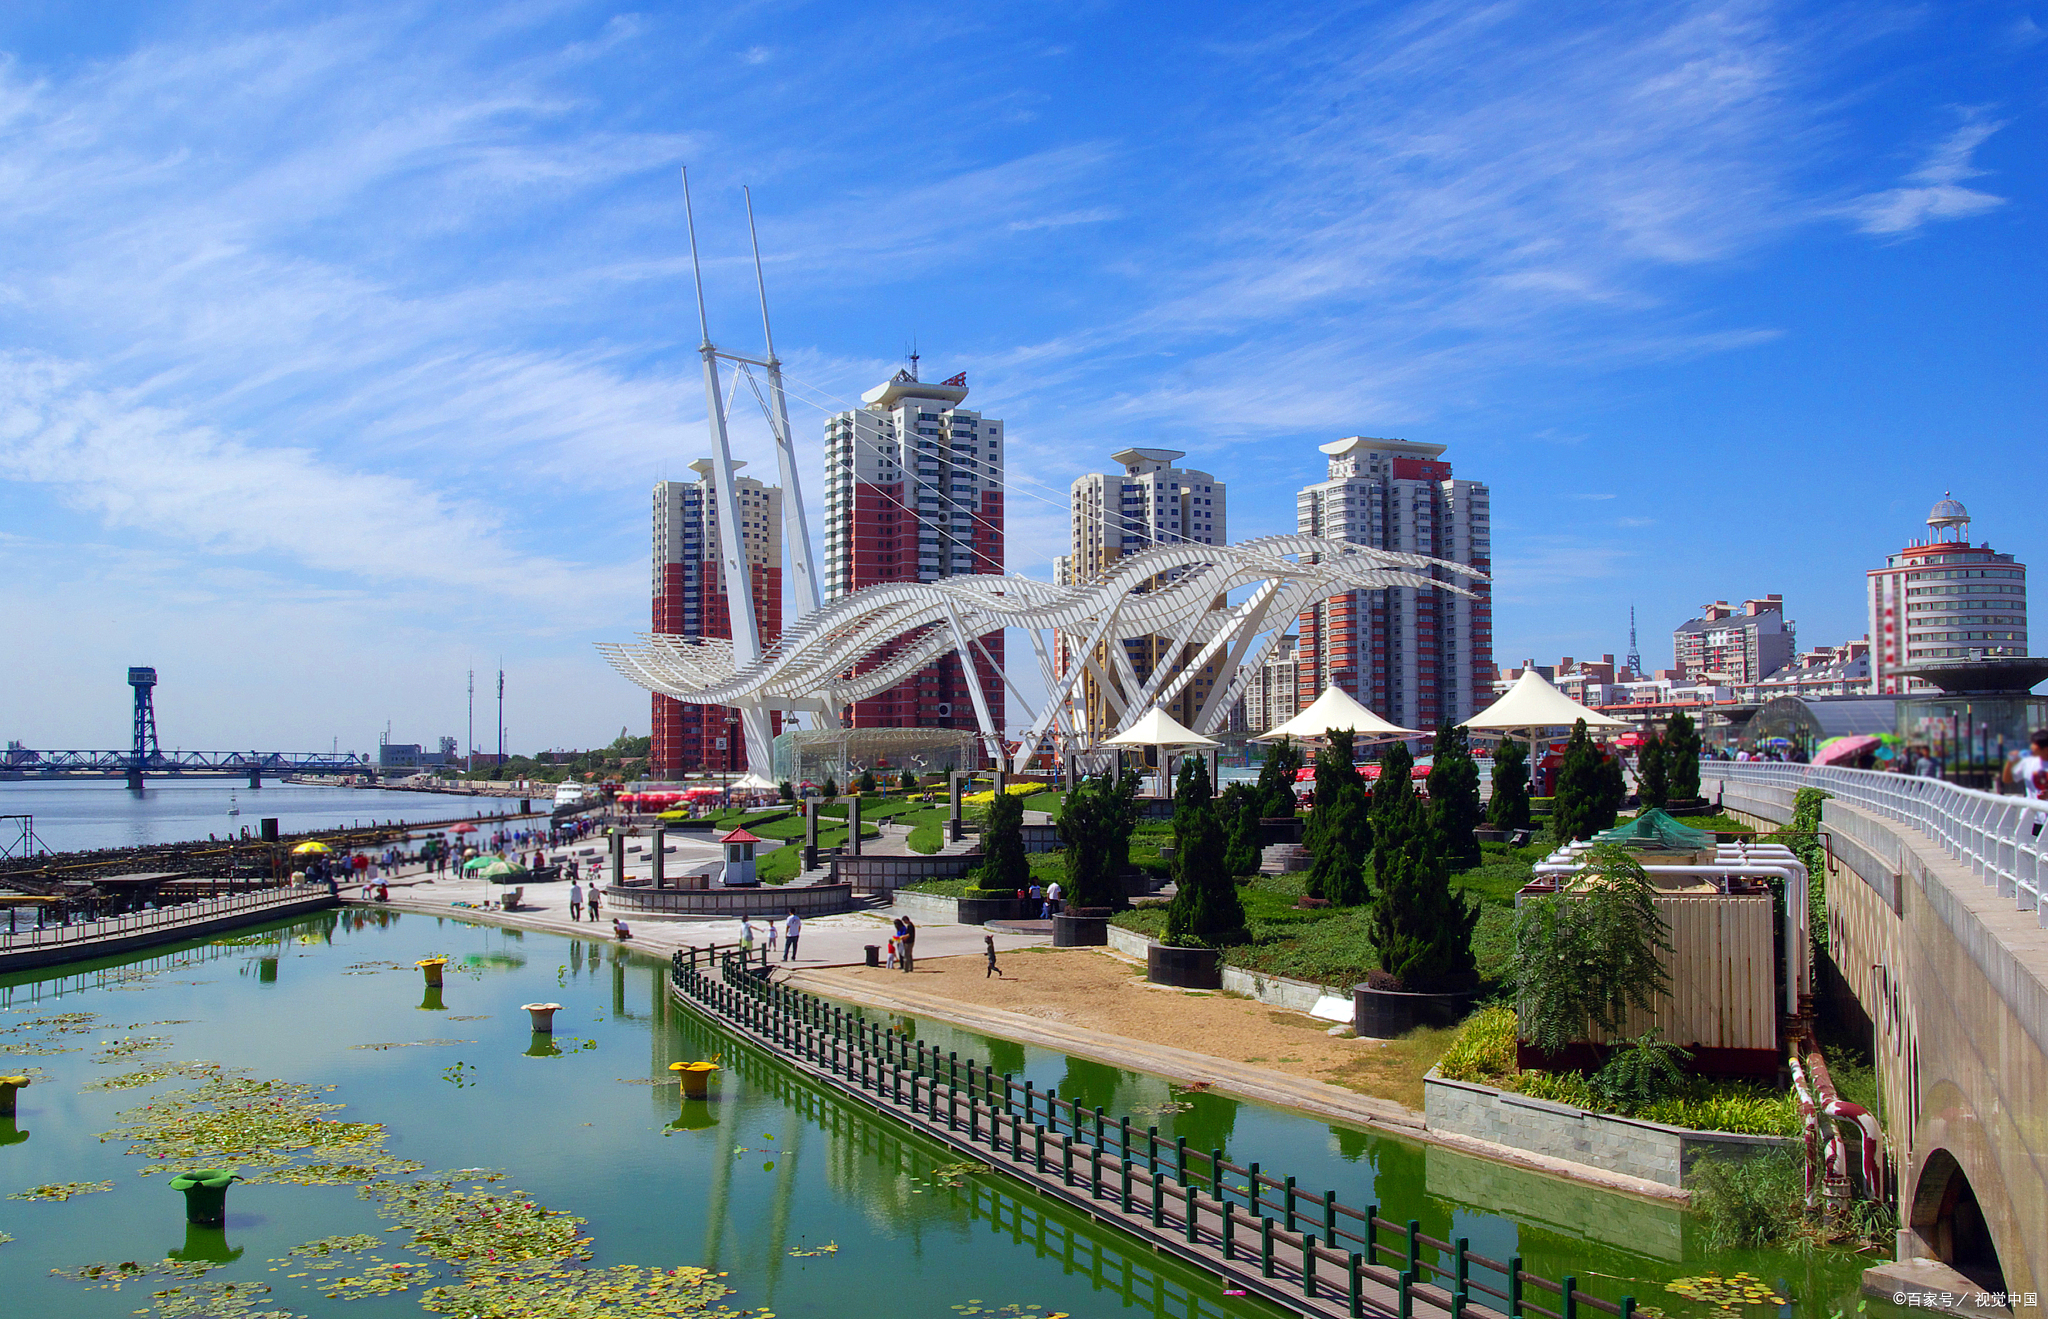 天津市滨海新区是一个美丽的旅游胜地,拥有许多值得一游的打卡地